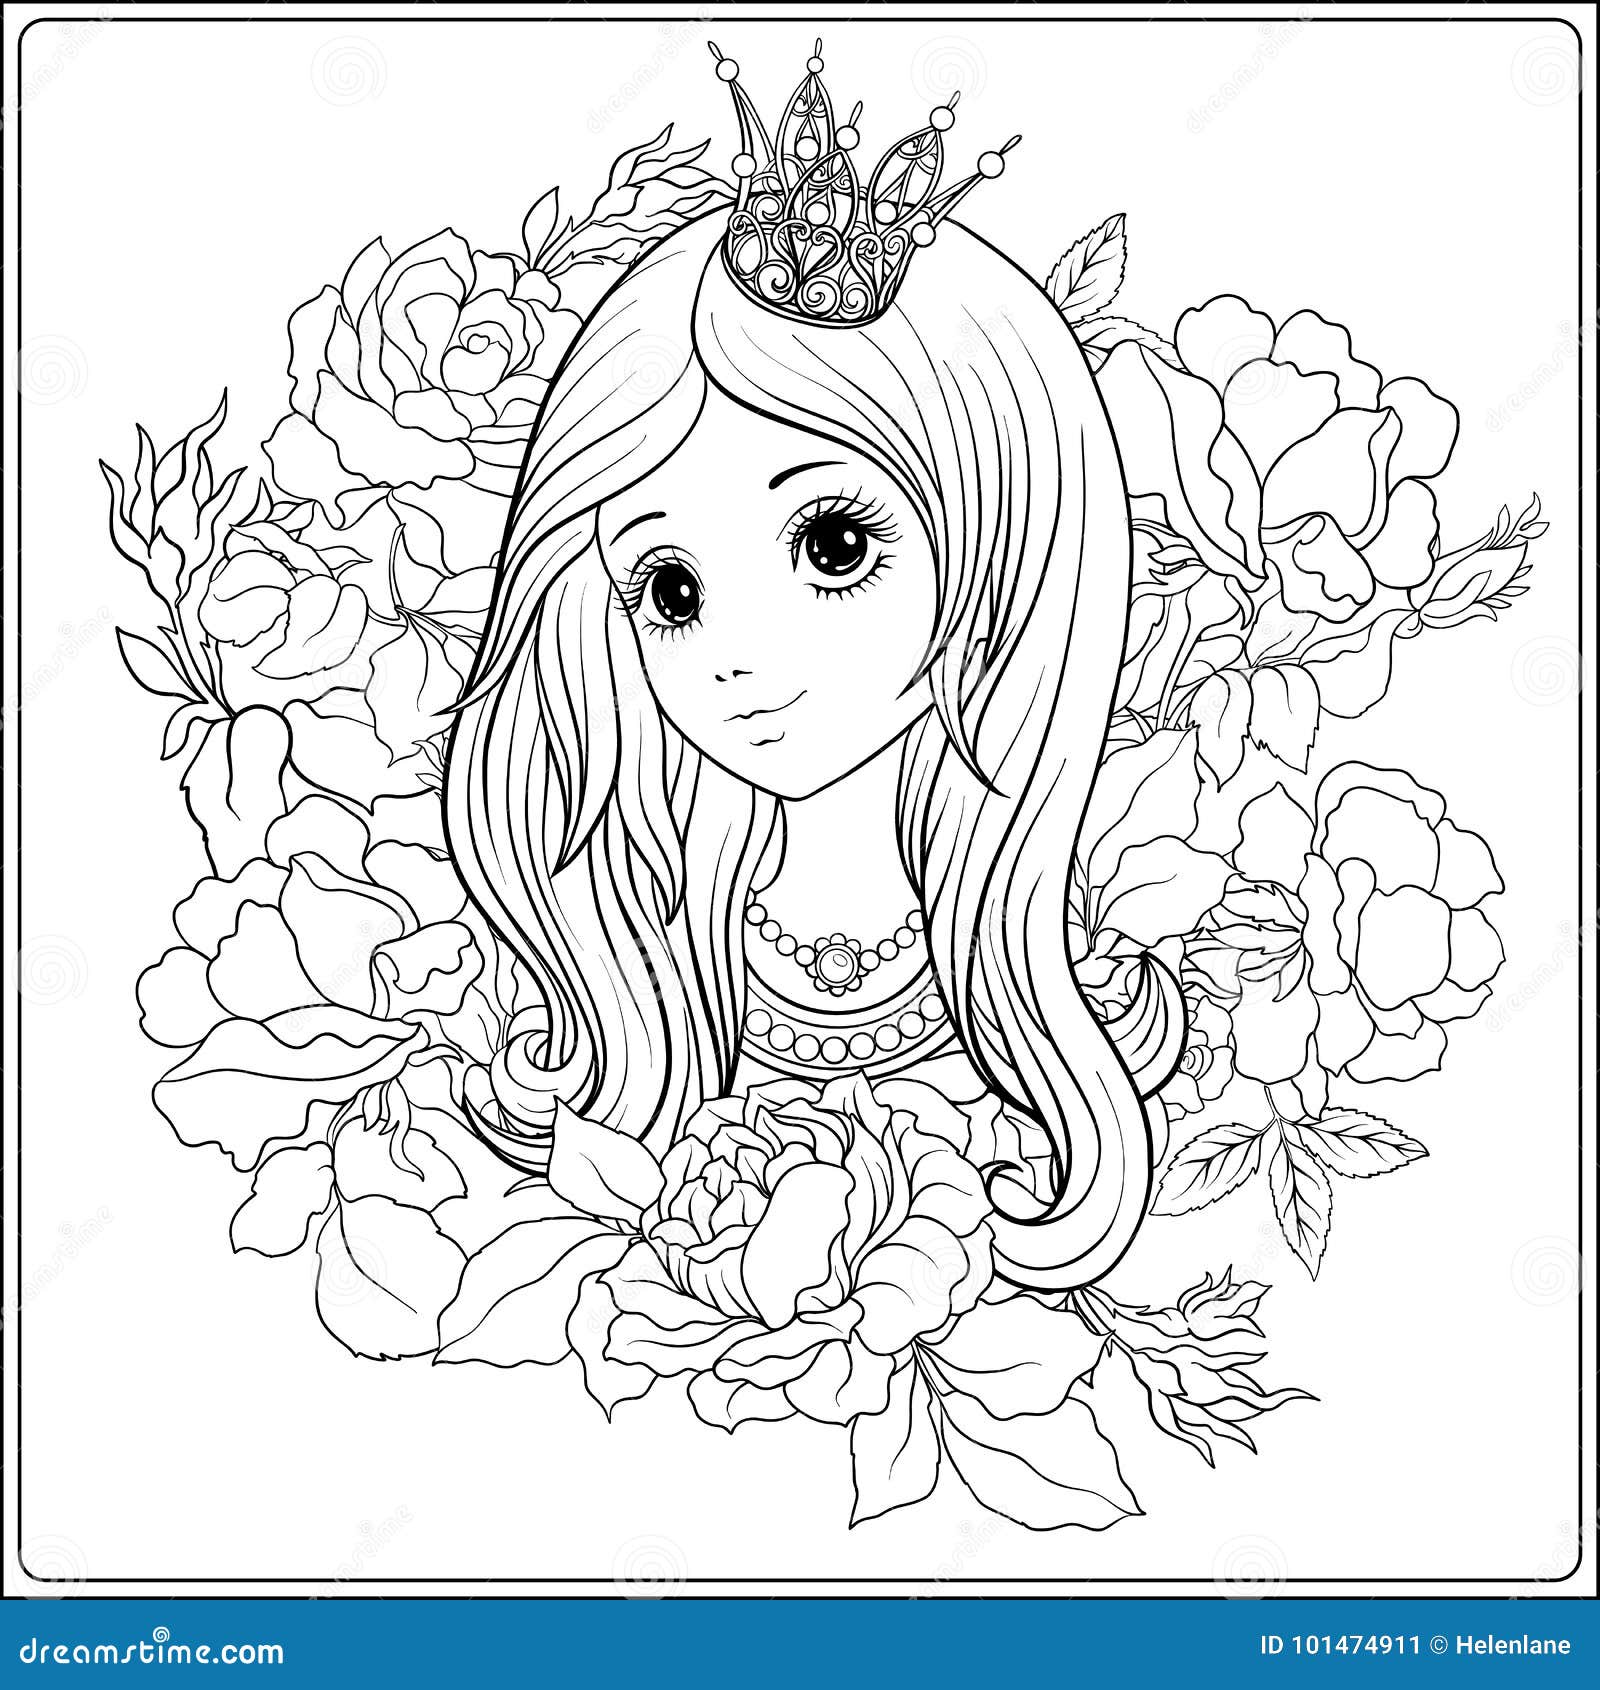 Desenho de uma linda princesa no jardim para colorir